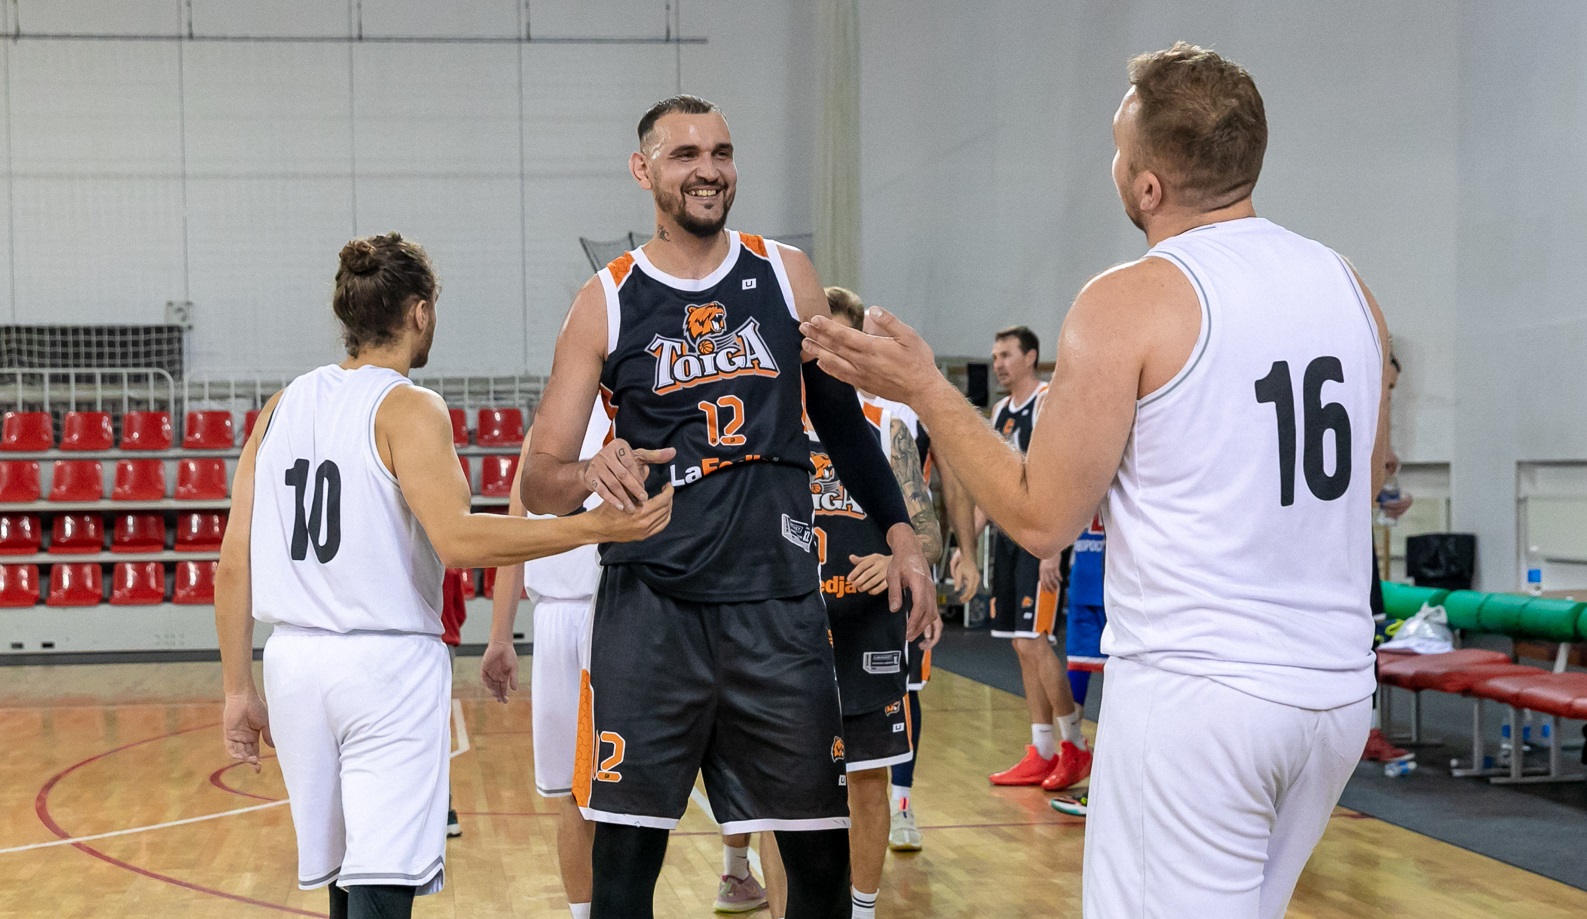 В Краснодаре состоялся турнир по блиц-баскетболу